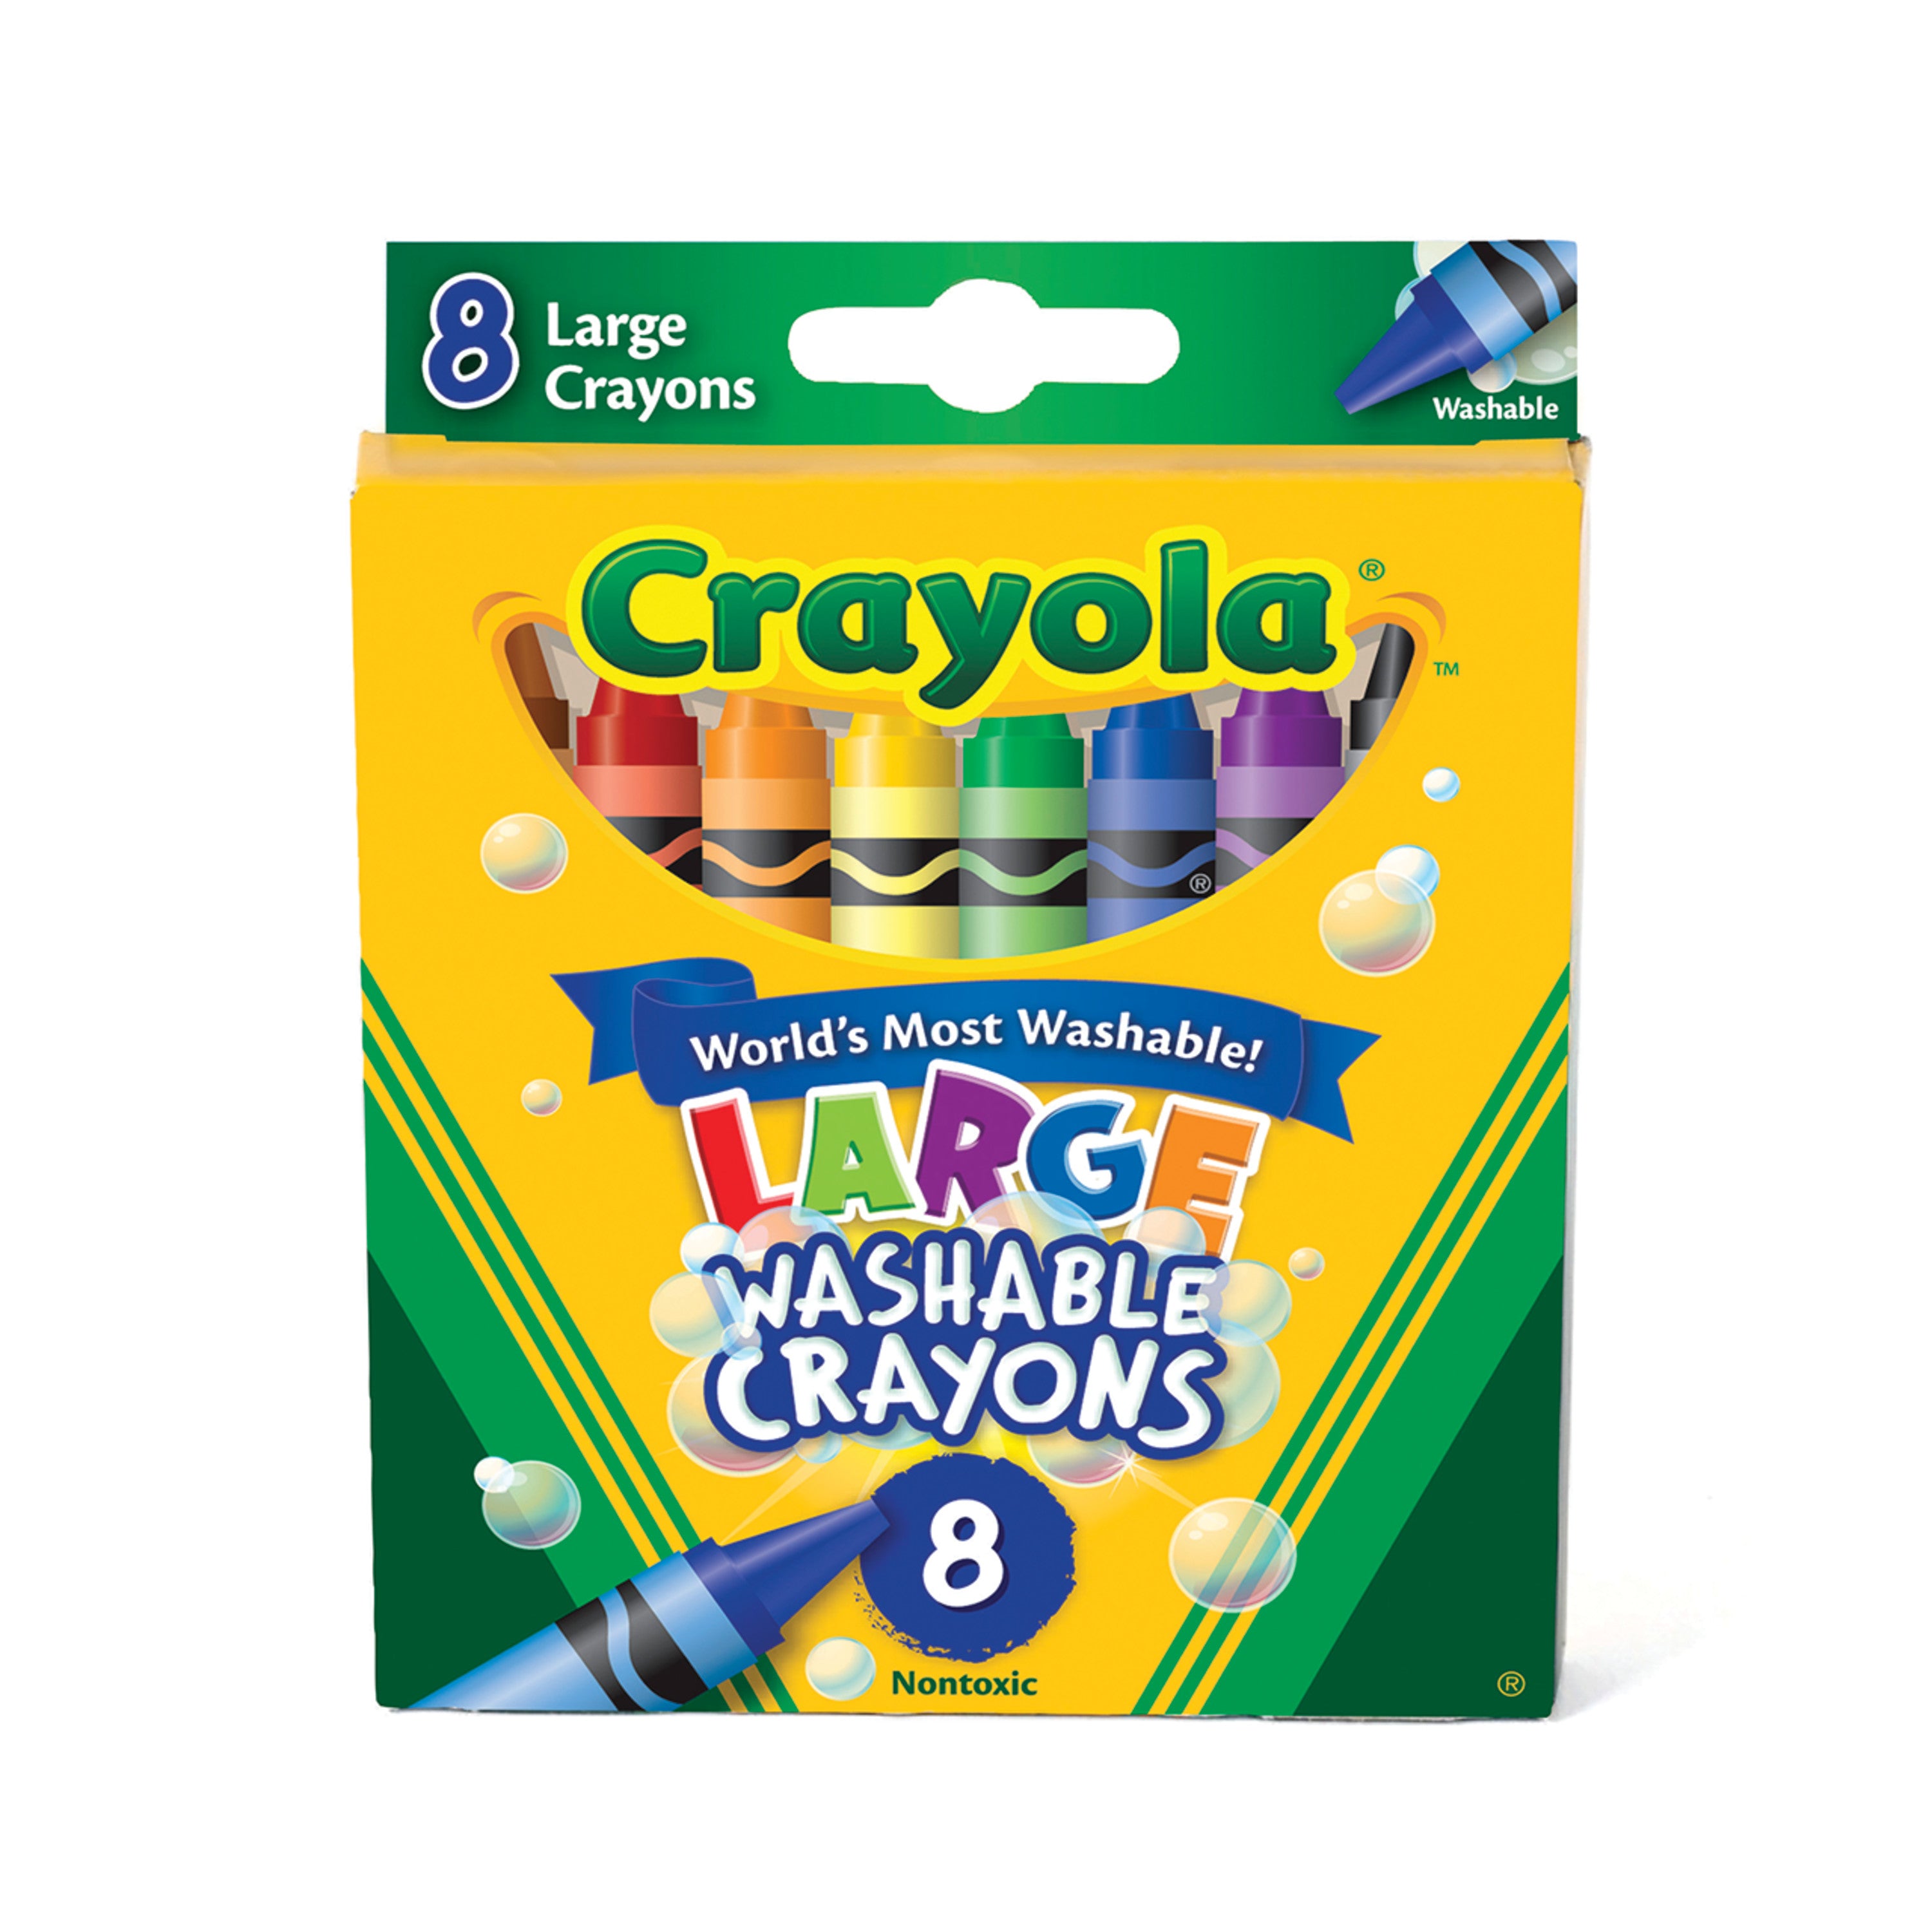 Crayola Large Washable Crayons, Nontoxic, Assorted, 8/Box